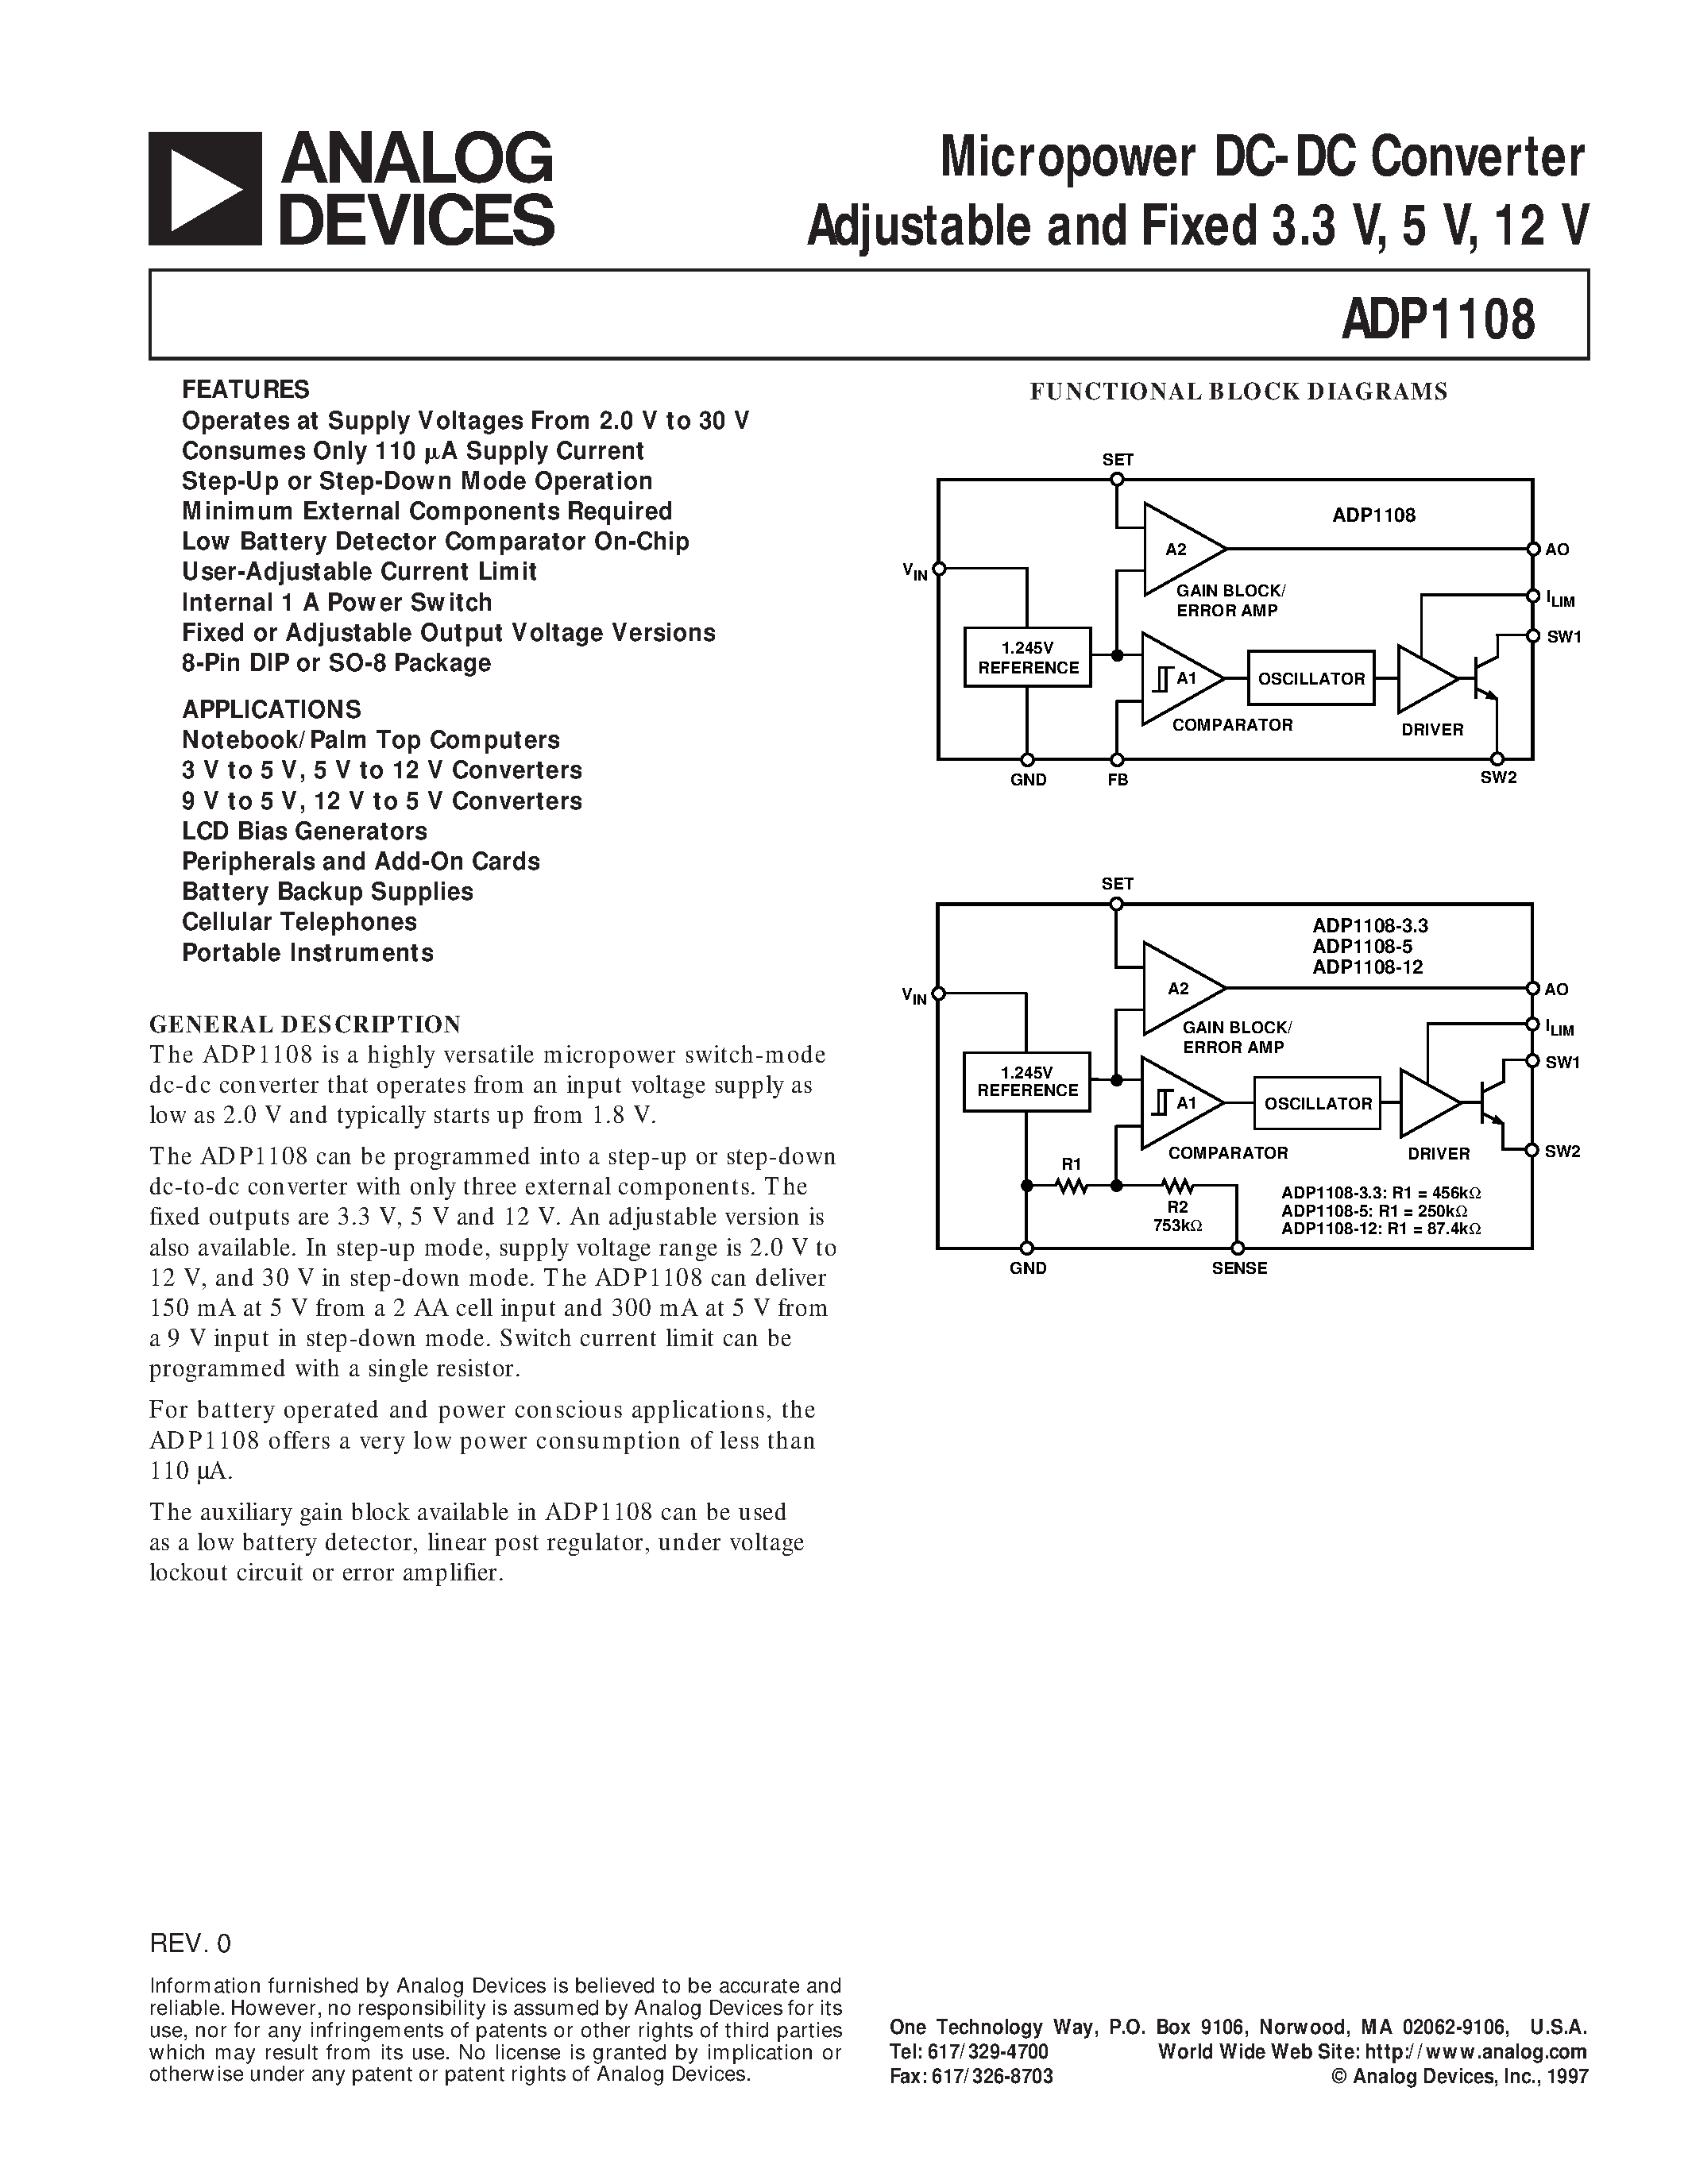 Даташит ADP1108 - Micropower DC-DC Converter Adjustable and Fixed 3.3 V/ 5 V/ 12 V страница 1